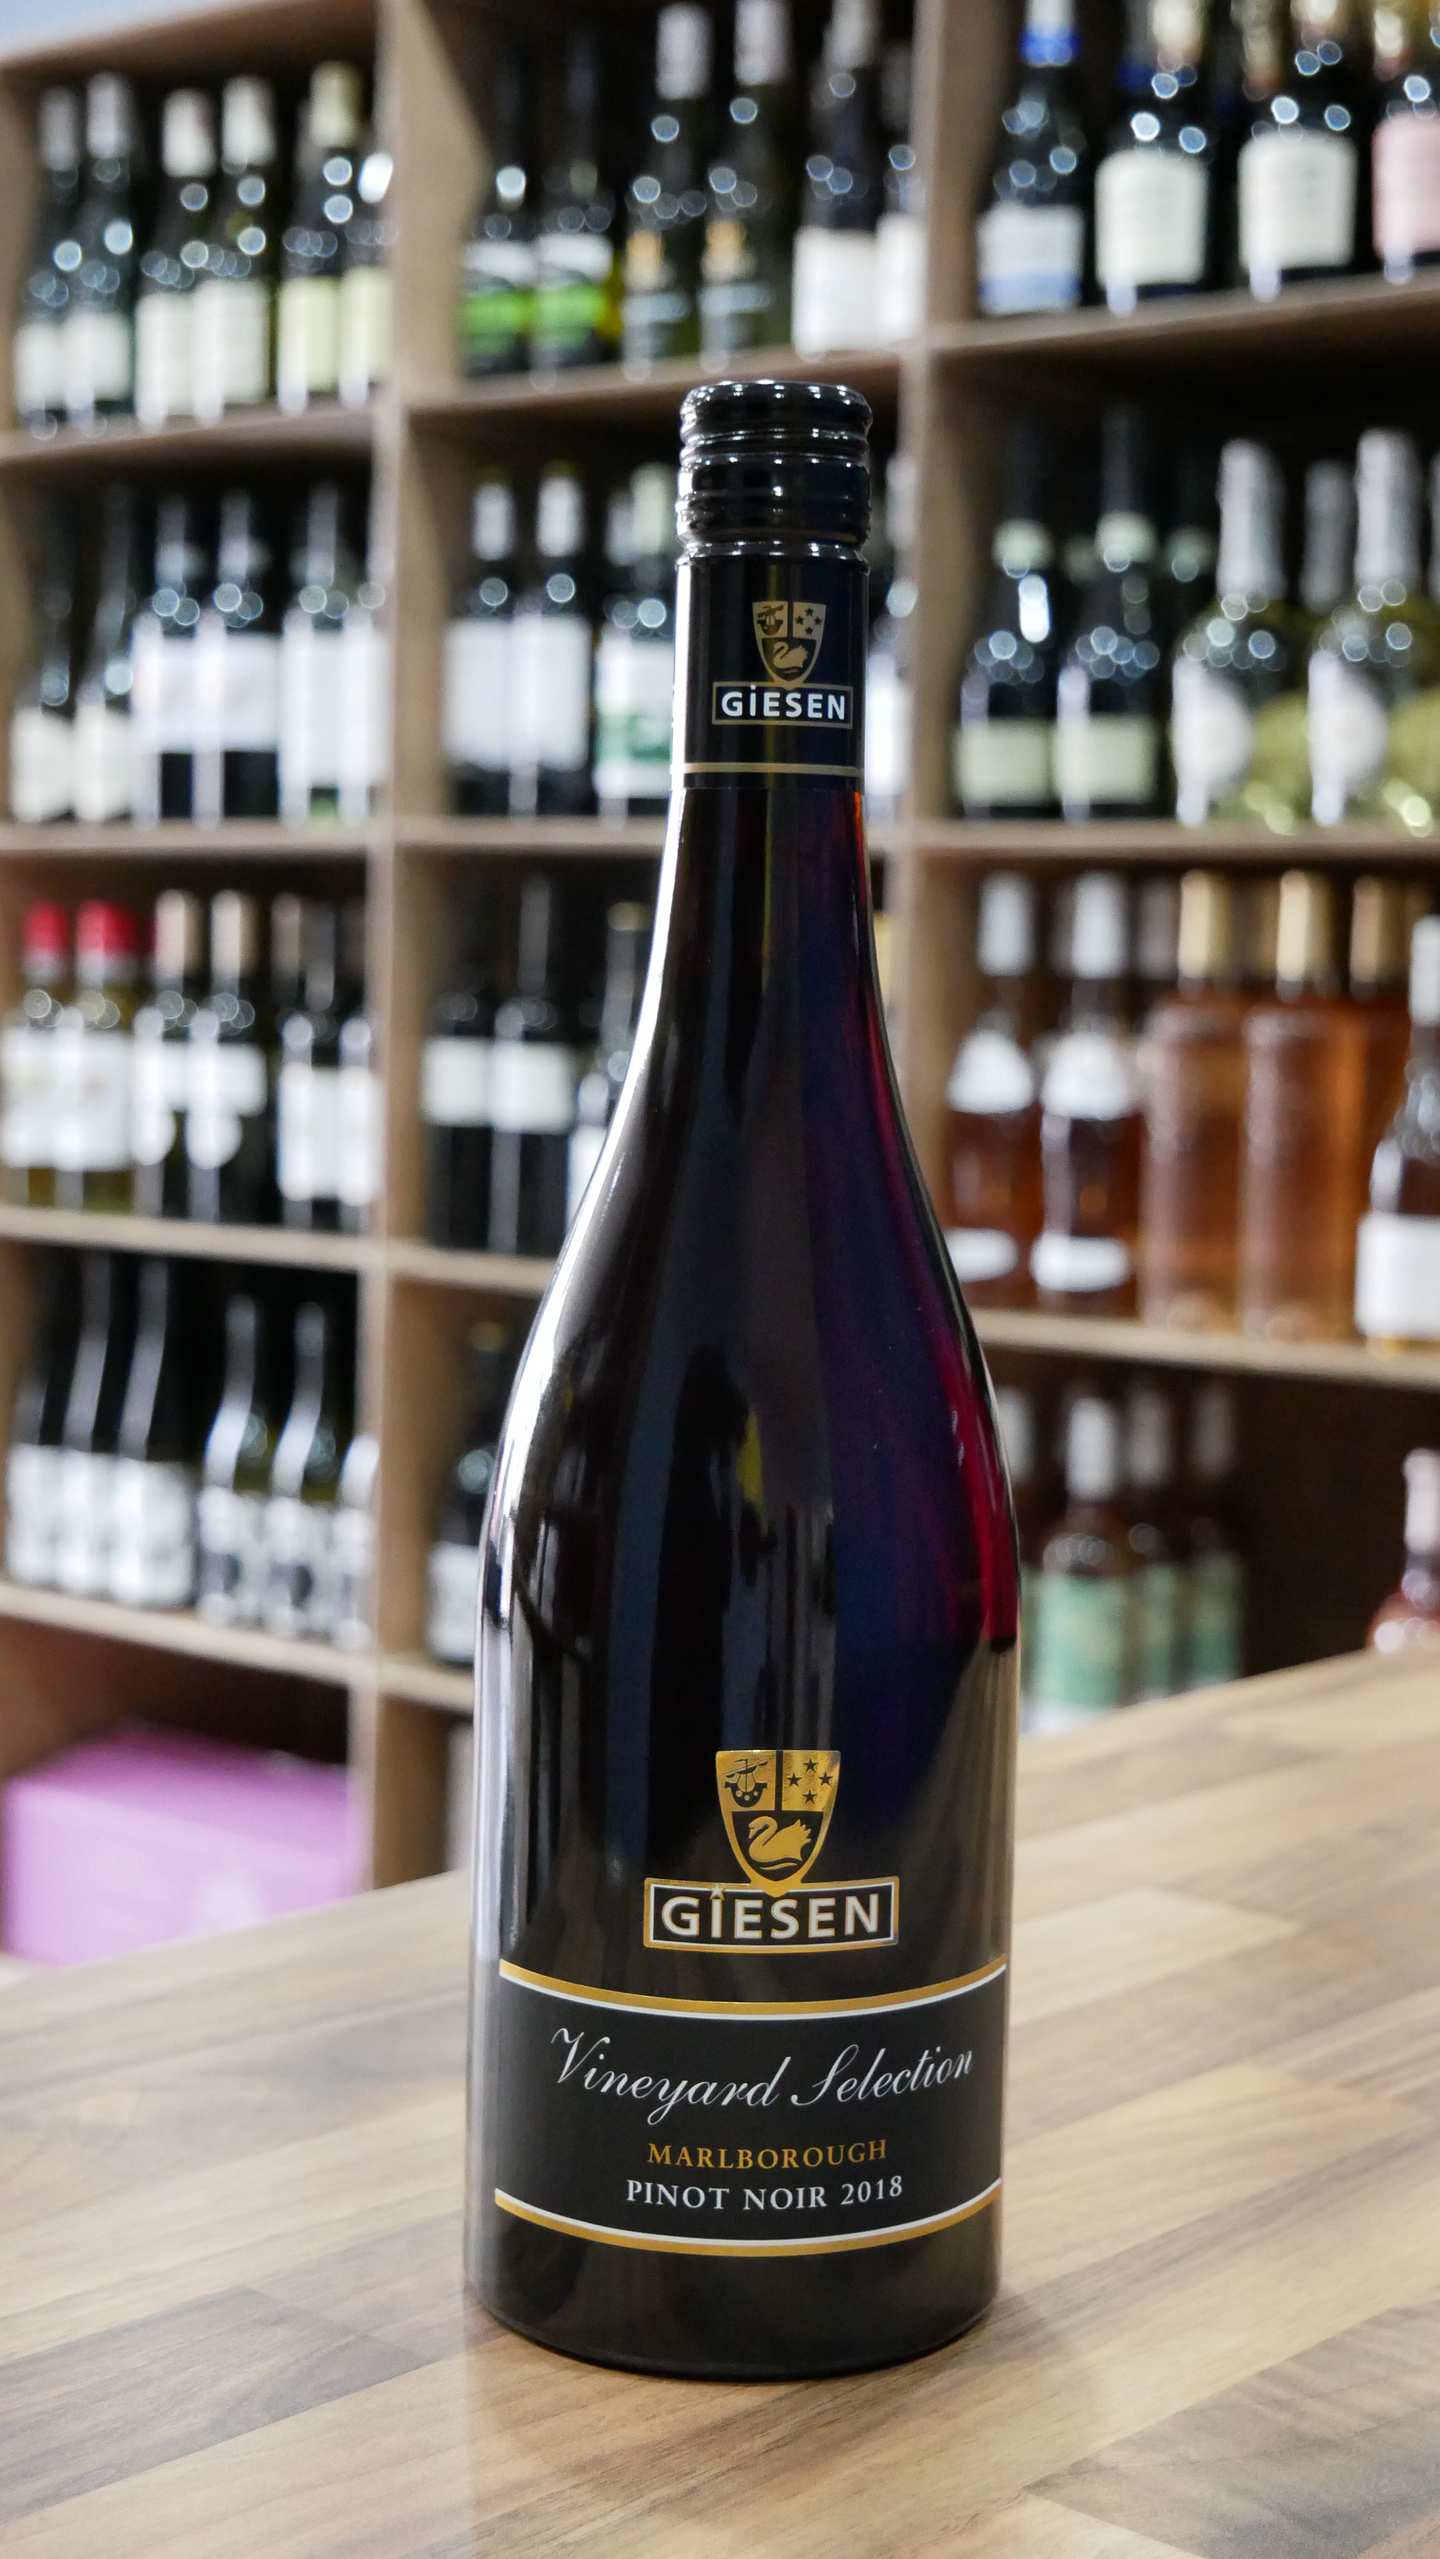 Giesen Vineyard Selection Pinot Noir 2018